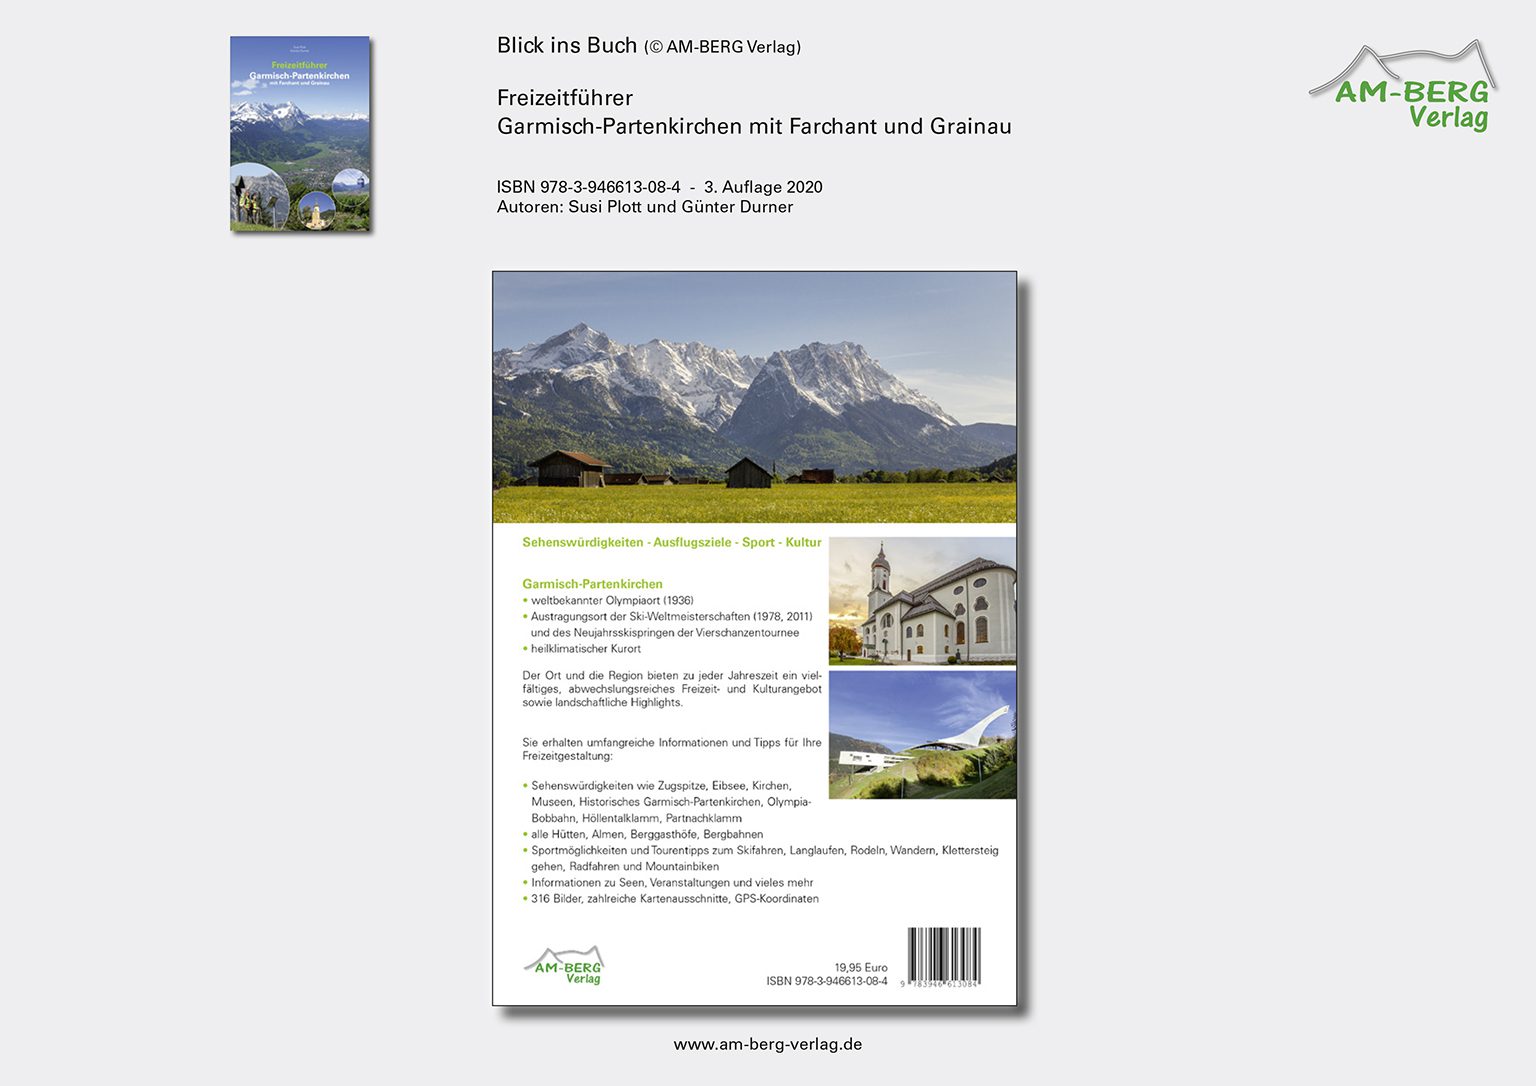 Freizeitführer Garmisch-Partenkirchen mit Farchant und Grainau_Rückseite Buch